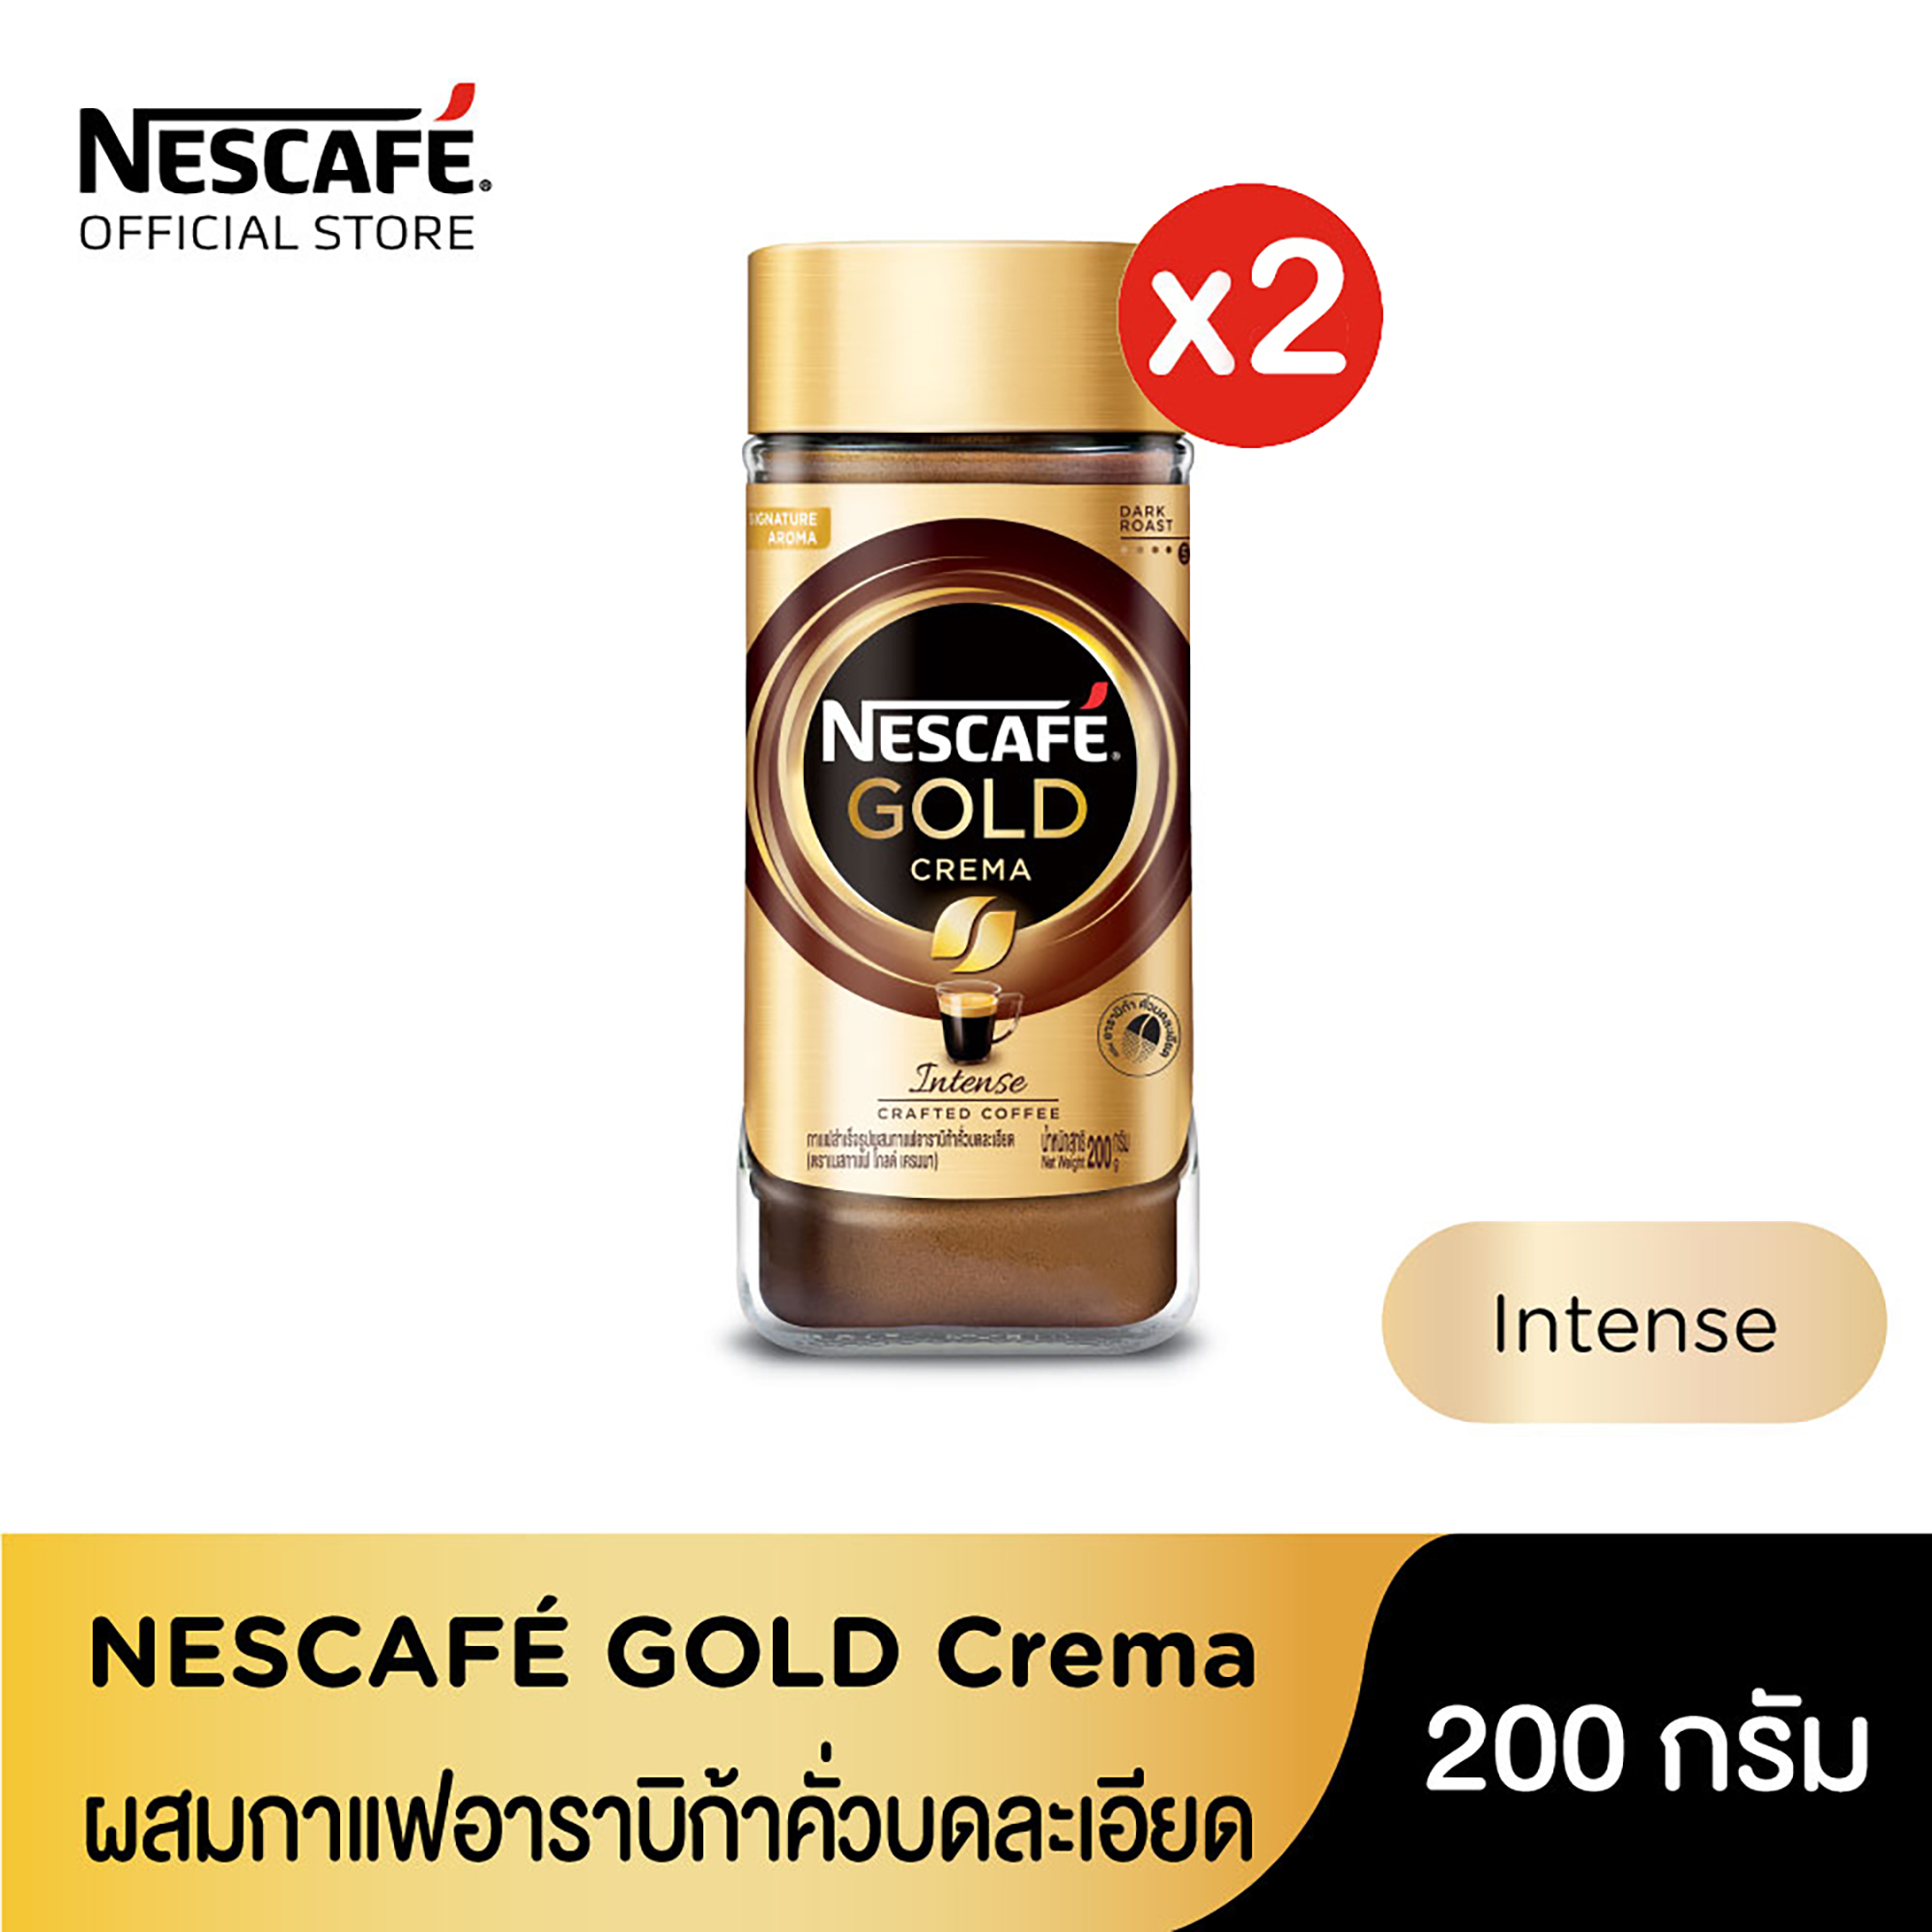 NESCAFE GOLD Crema Jar 200g เนสกาแฟโกลด์เครมา 200กรัม (2 ขวด)